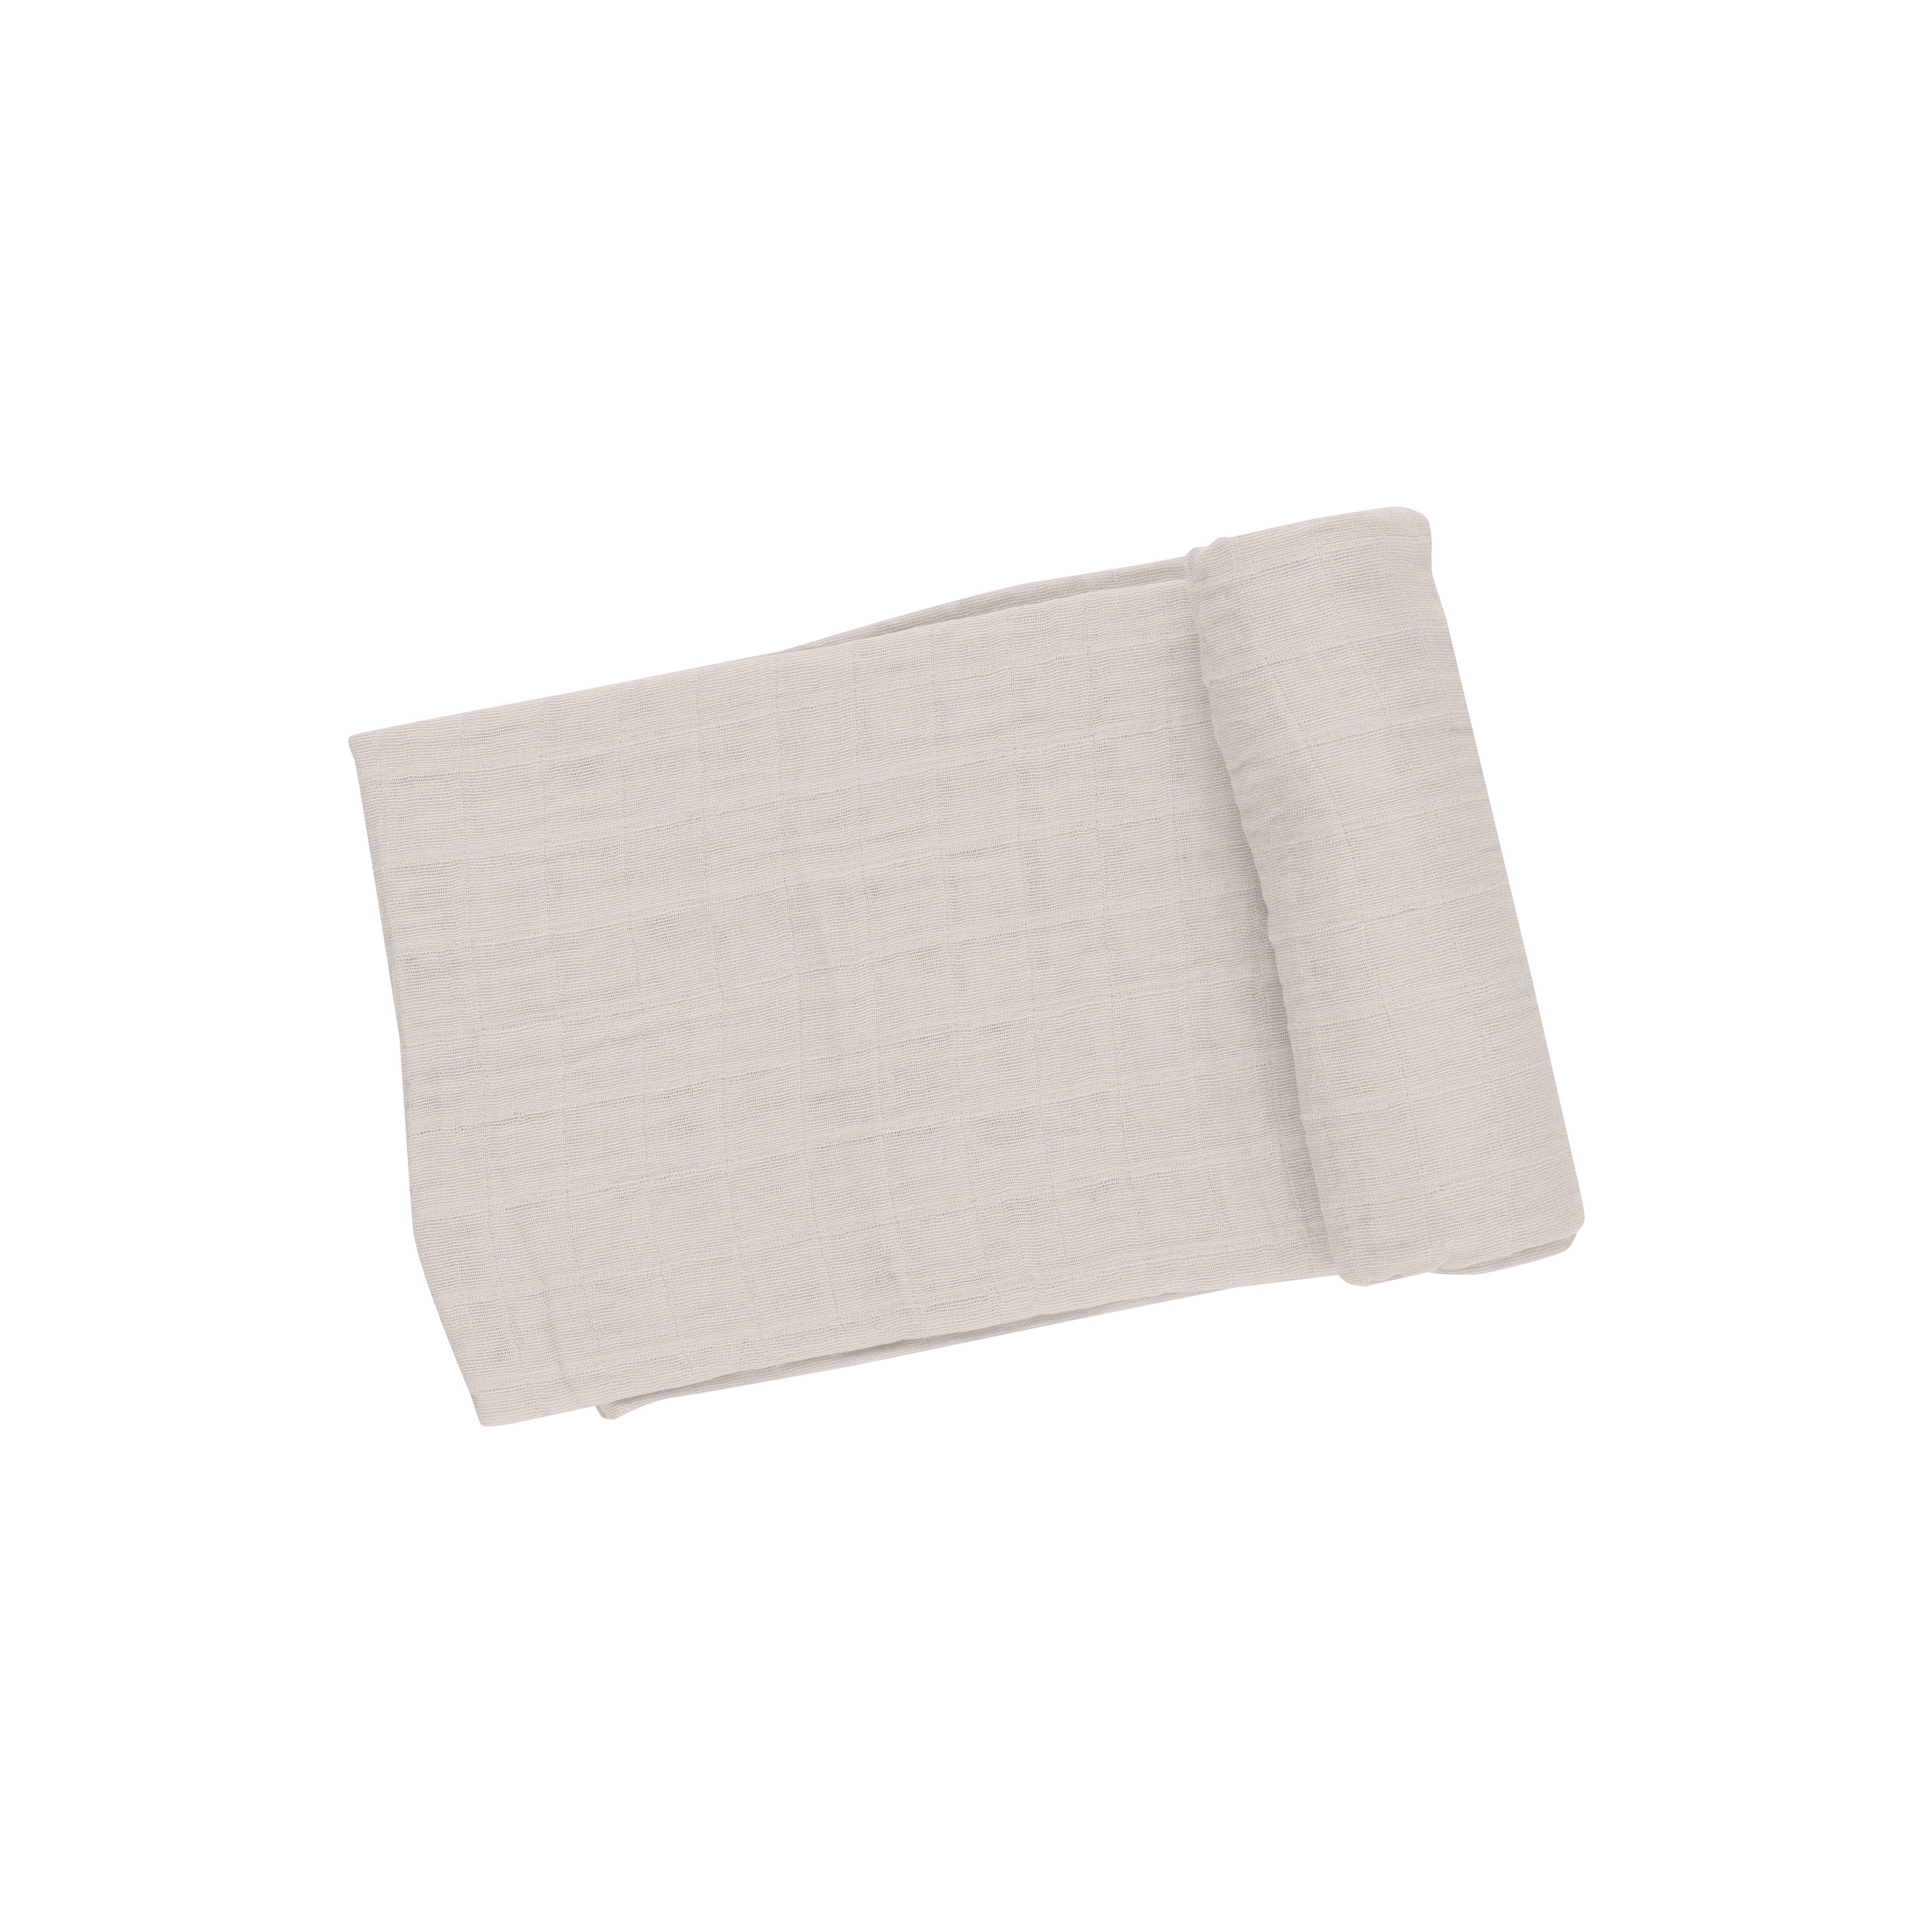 Swaddle Blanket - Oatmeal Solid Muslin